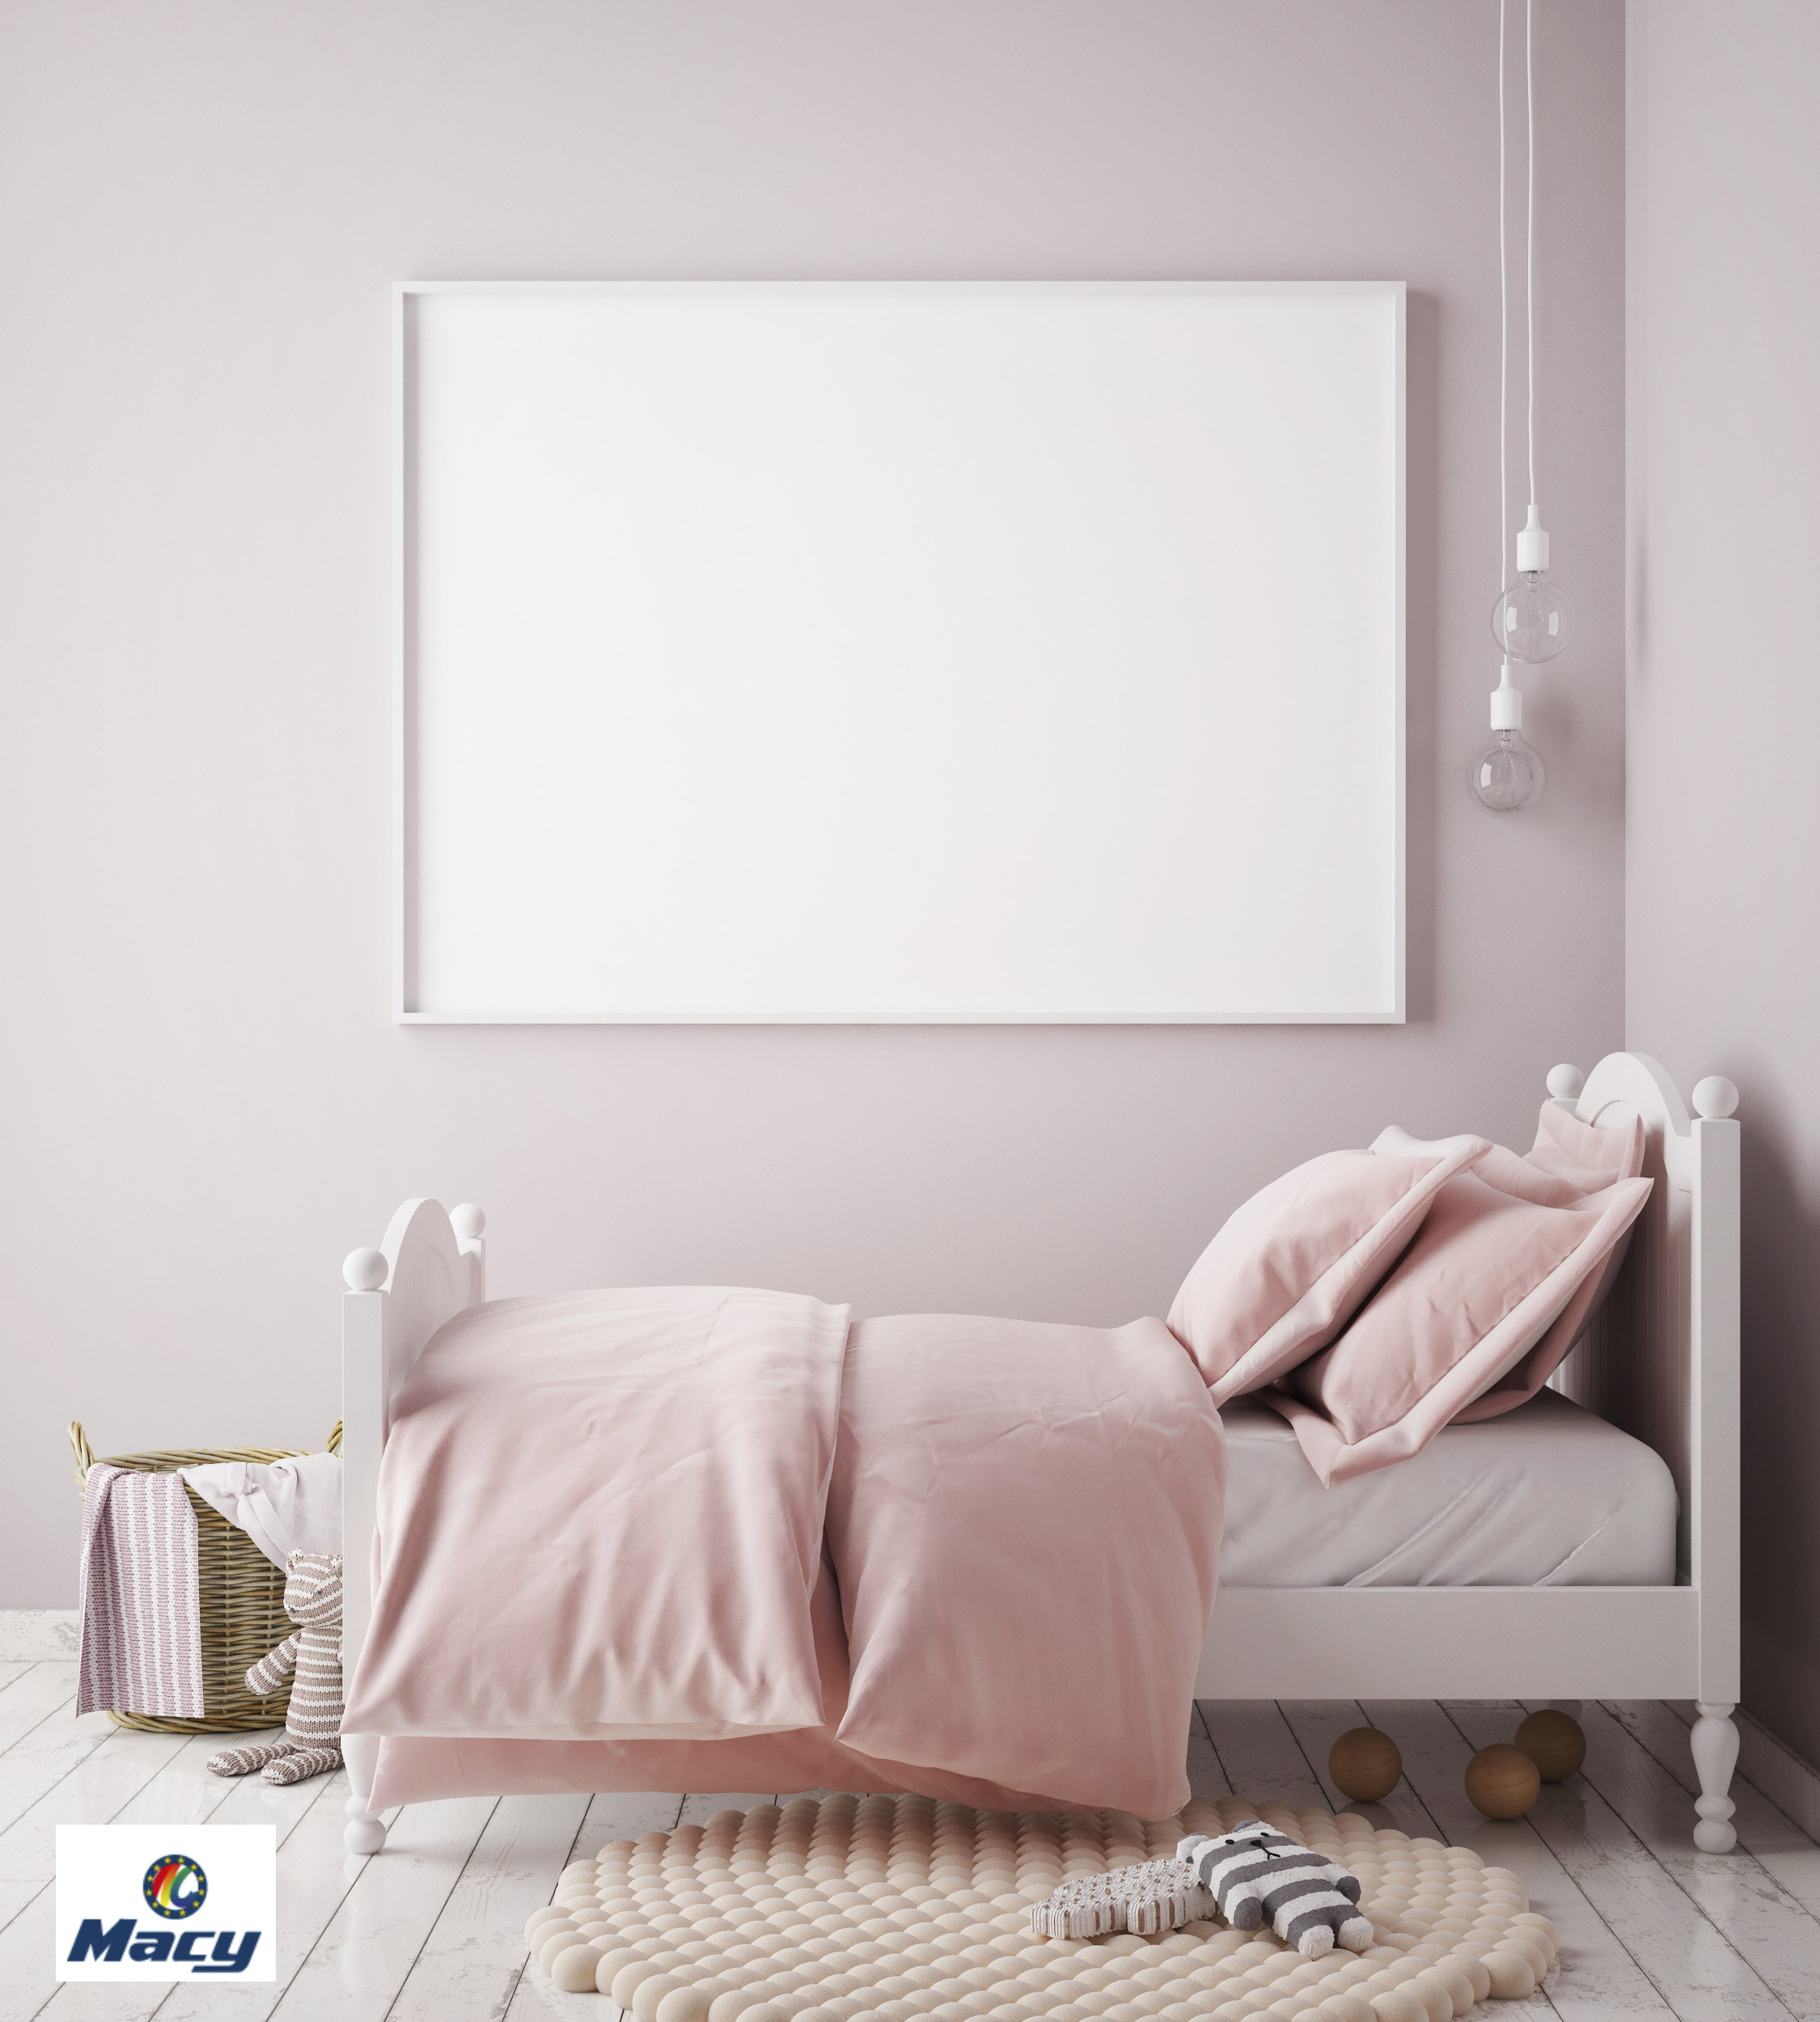 relajantes para pintar tu dormitorio .:. Blog .:. Macy